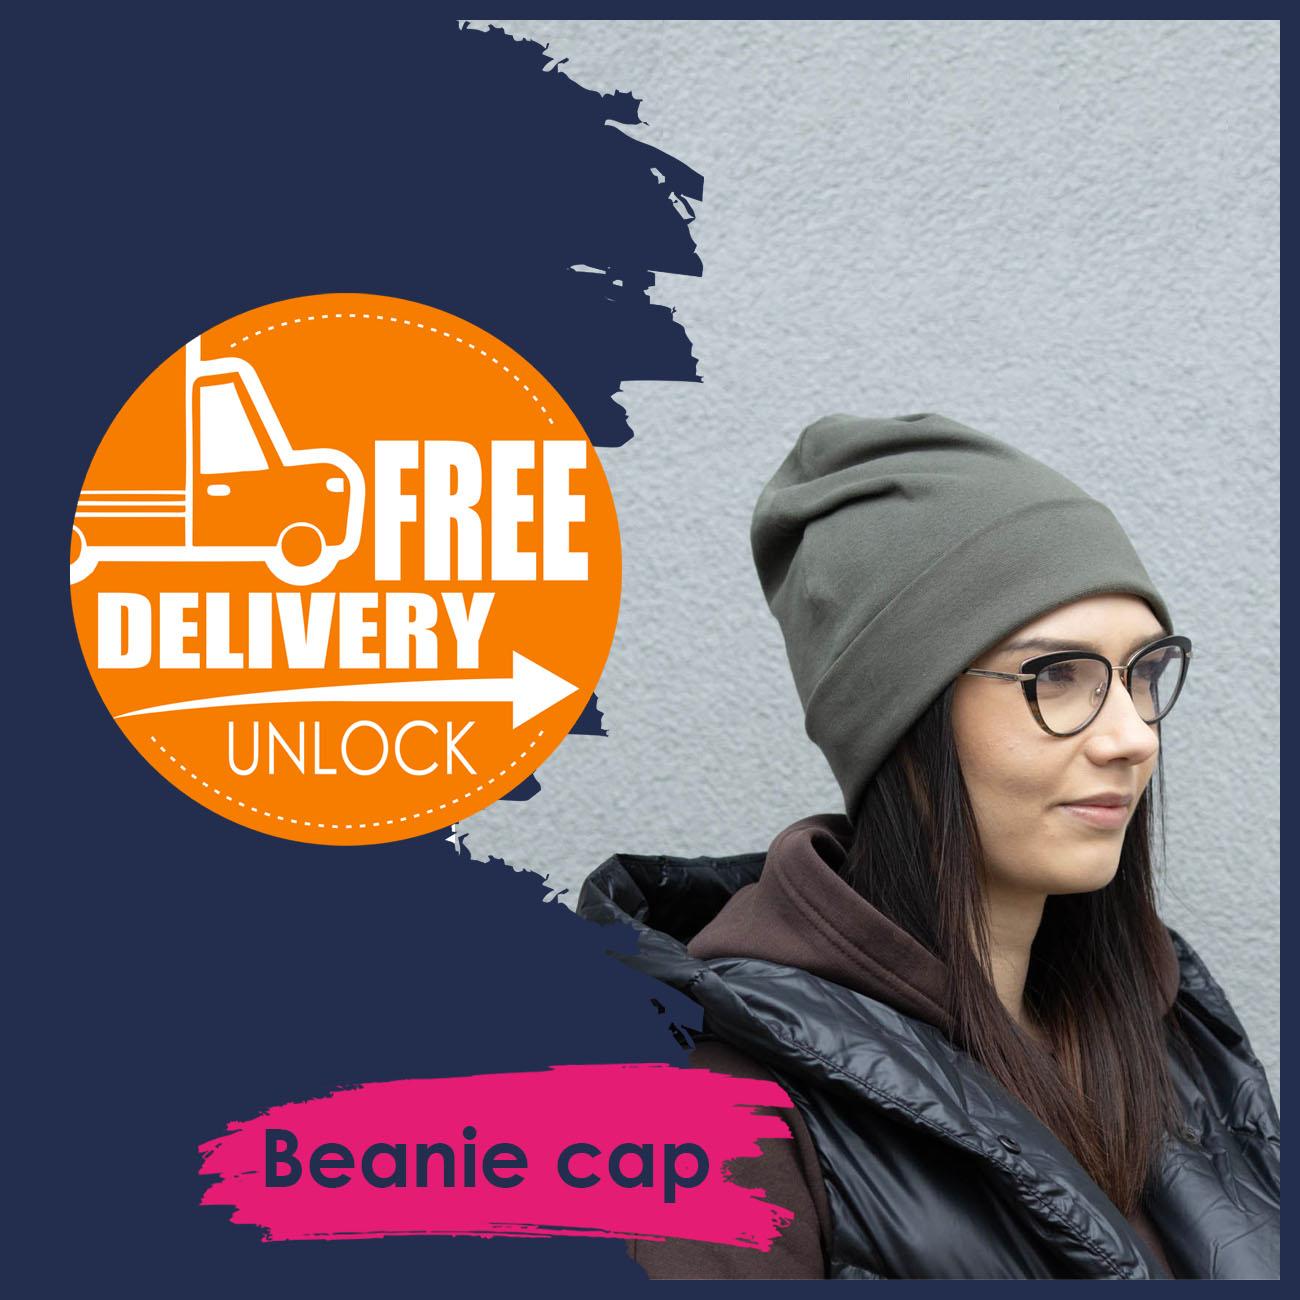 BEANIE CAP